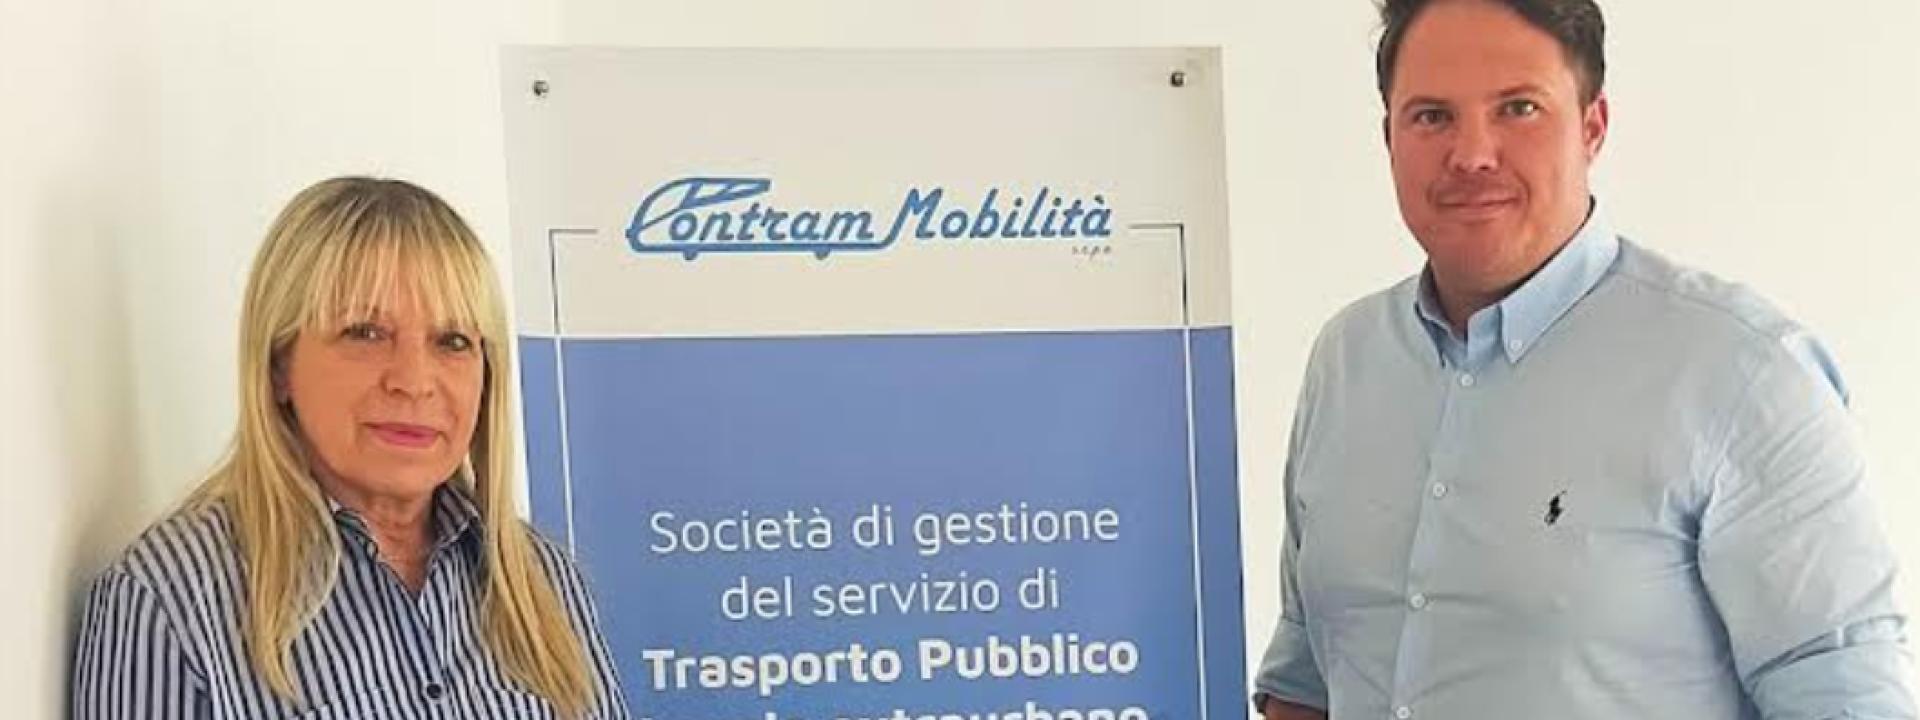 Marche - Luca Bonci è il nuovo vice presidente di Contram spa